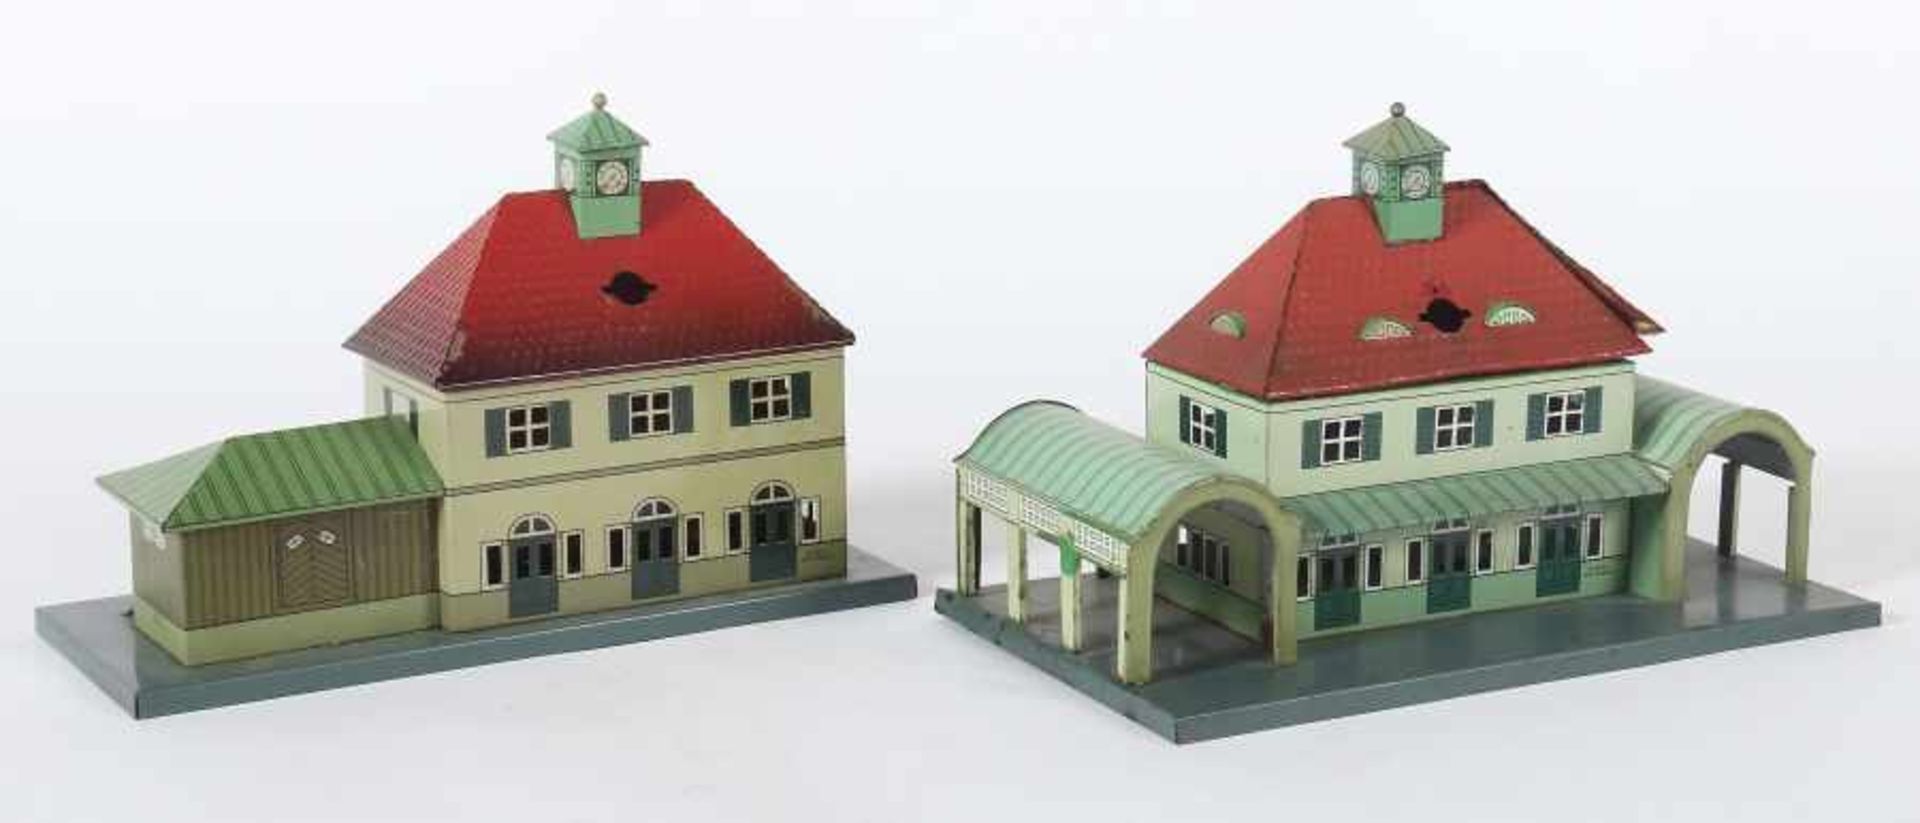 2 BahnhöfeKarl Bub, Spur 0, 1x Modell 861, 1925-1939, Blech, grünlich chromlithografiert, - Bild 2 aus 2